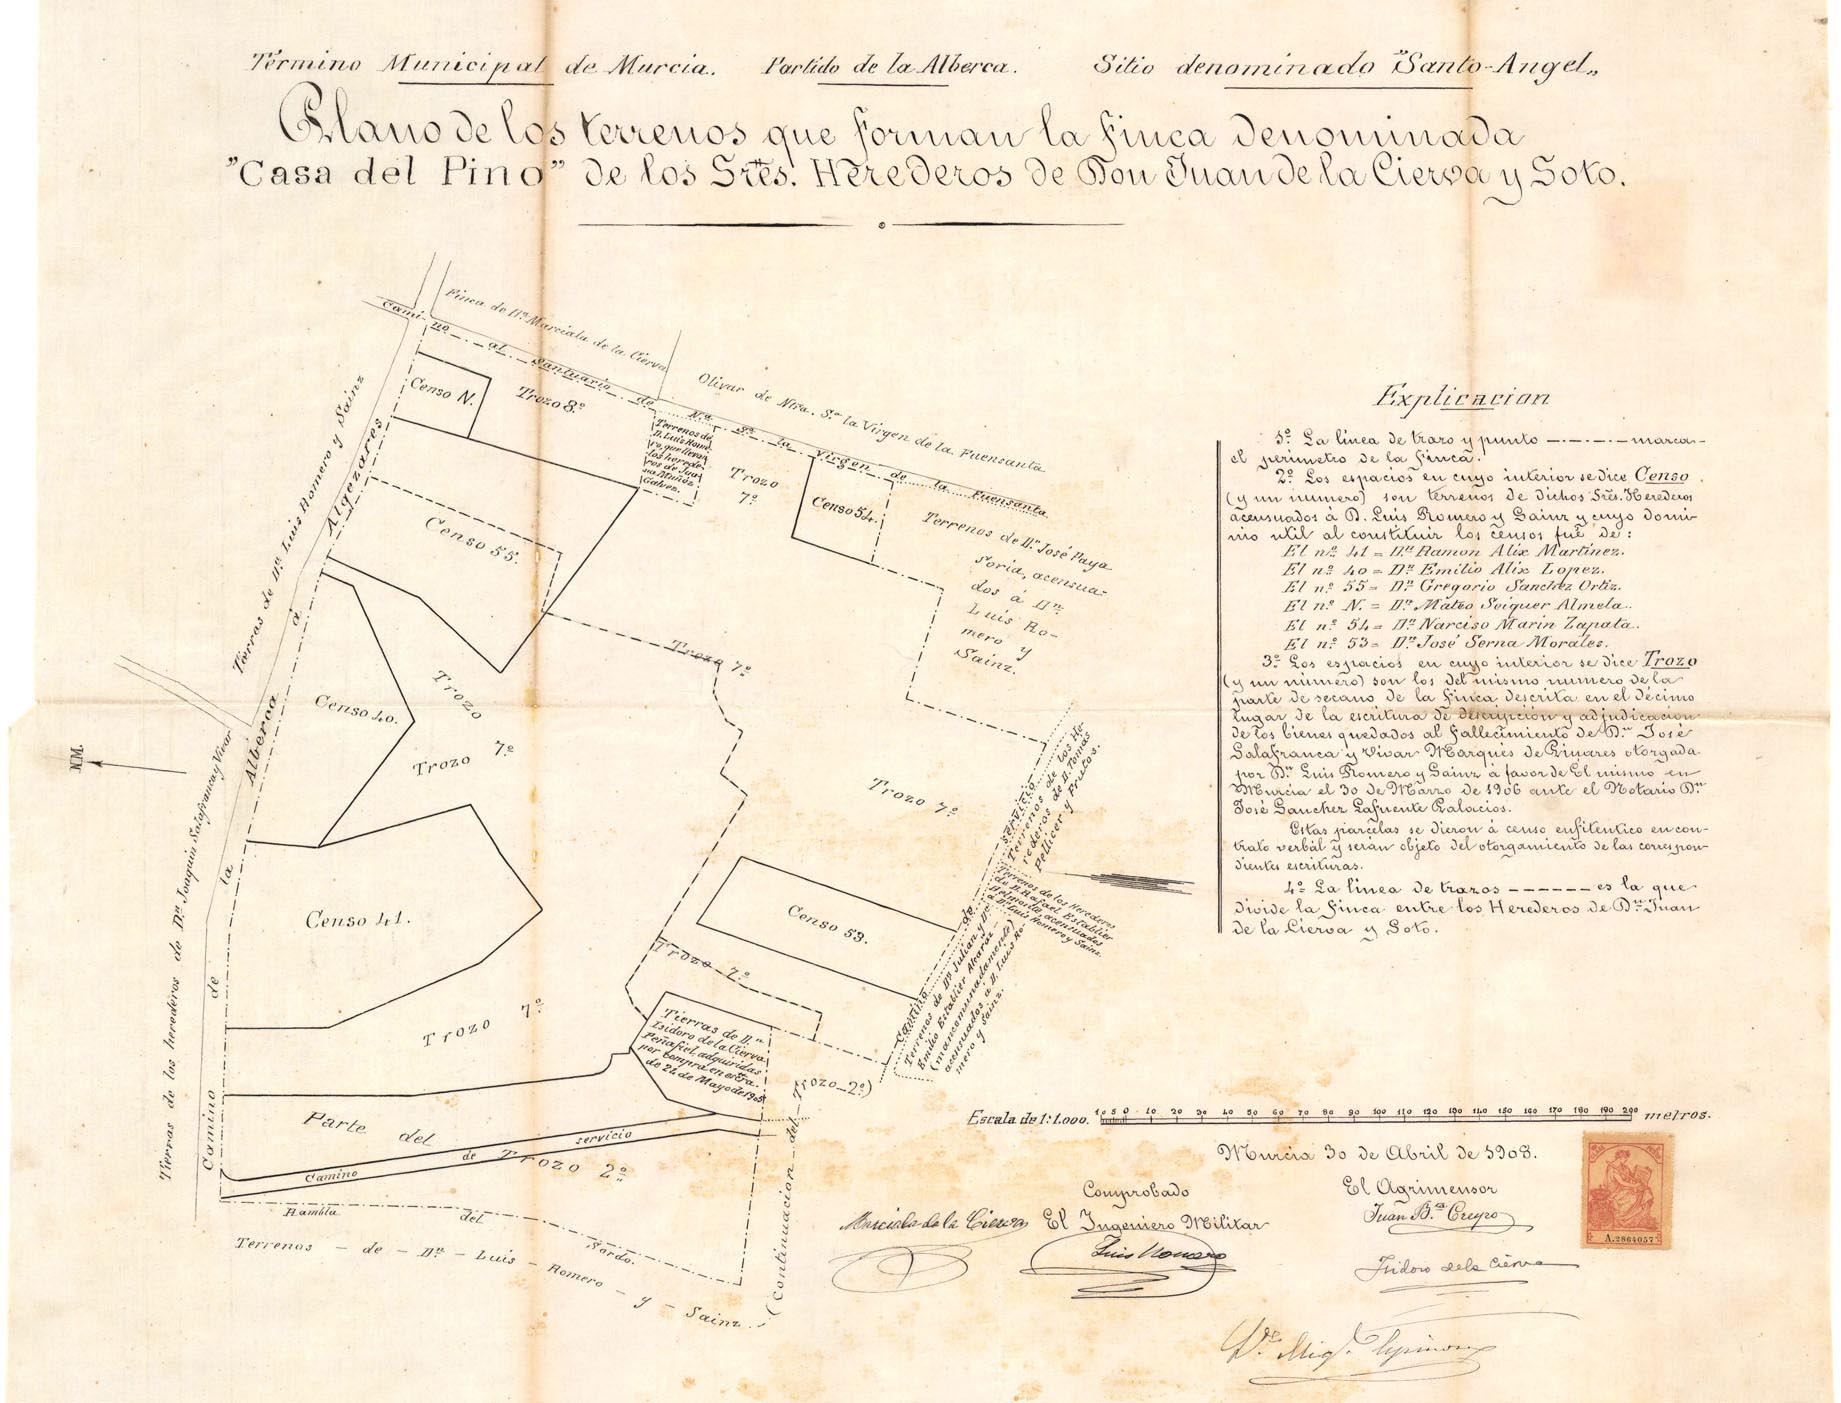 Plano de los terrenos que forman la finca denominada Casa del Pino de los Sres. herederos de don Juan de la Cierva y Soto.